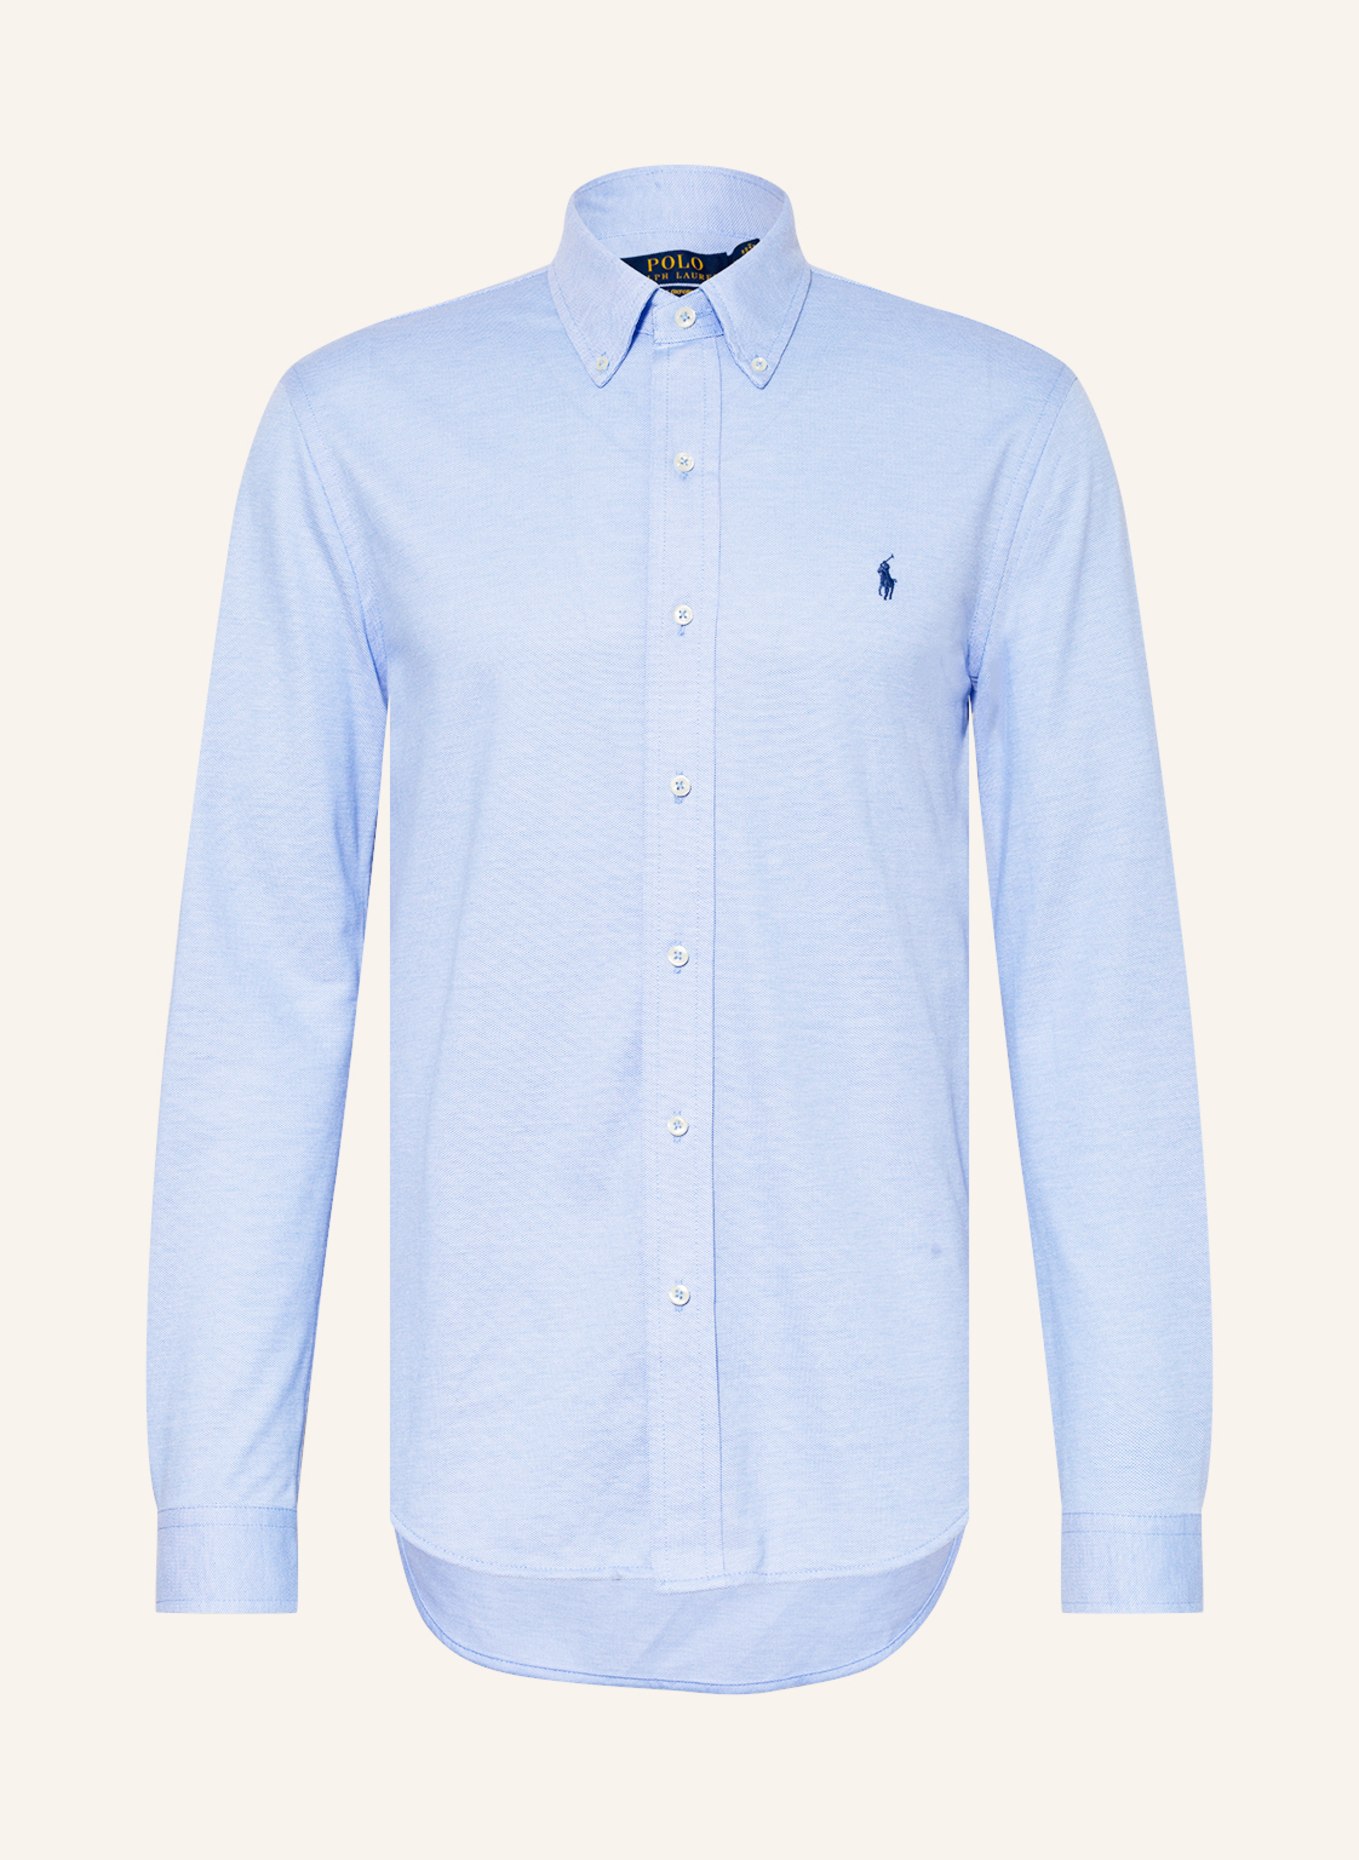 POLO RALPH LAUREN Oxford shirt slim fit, Color: LIGHT BLUE (Image 1)